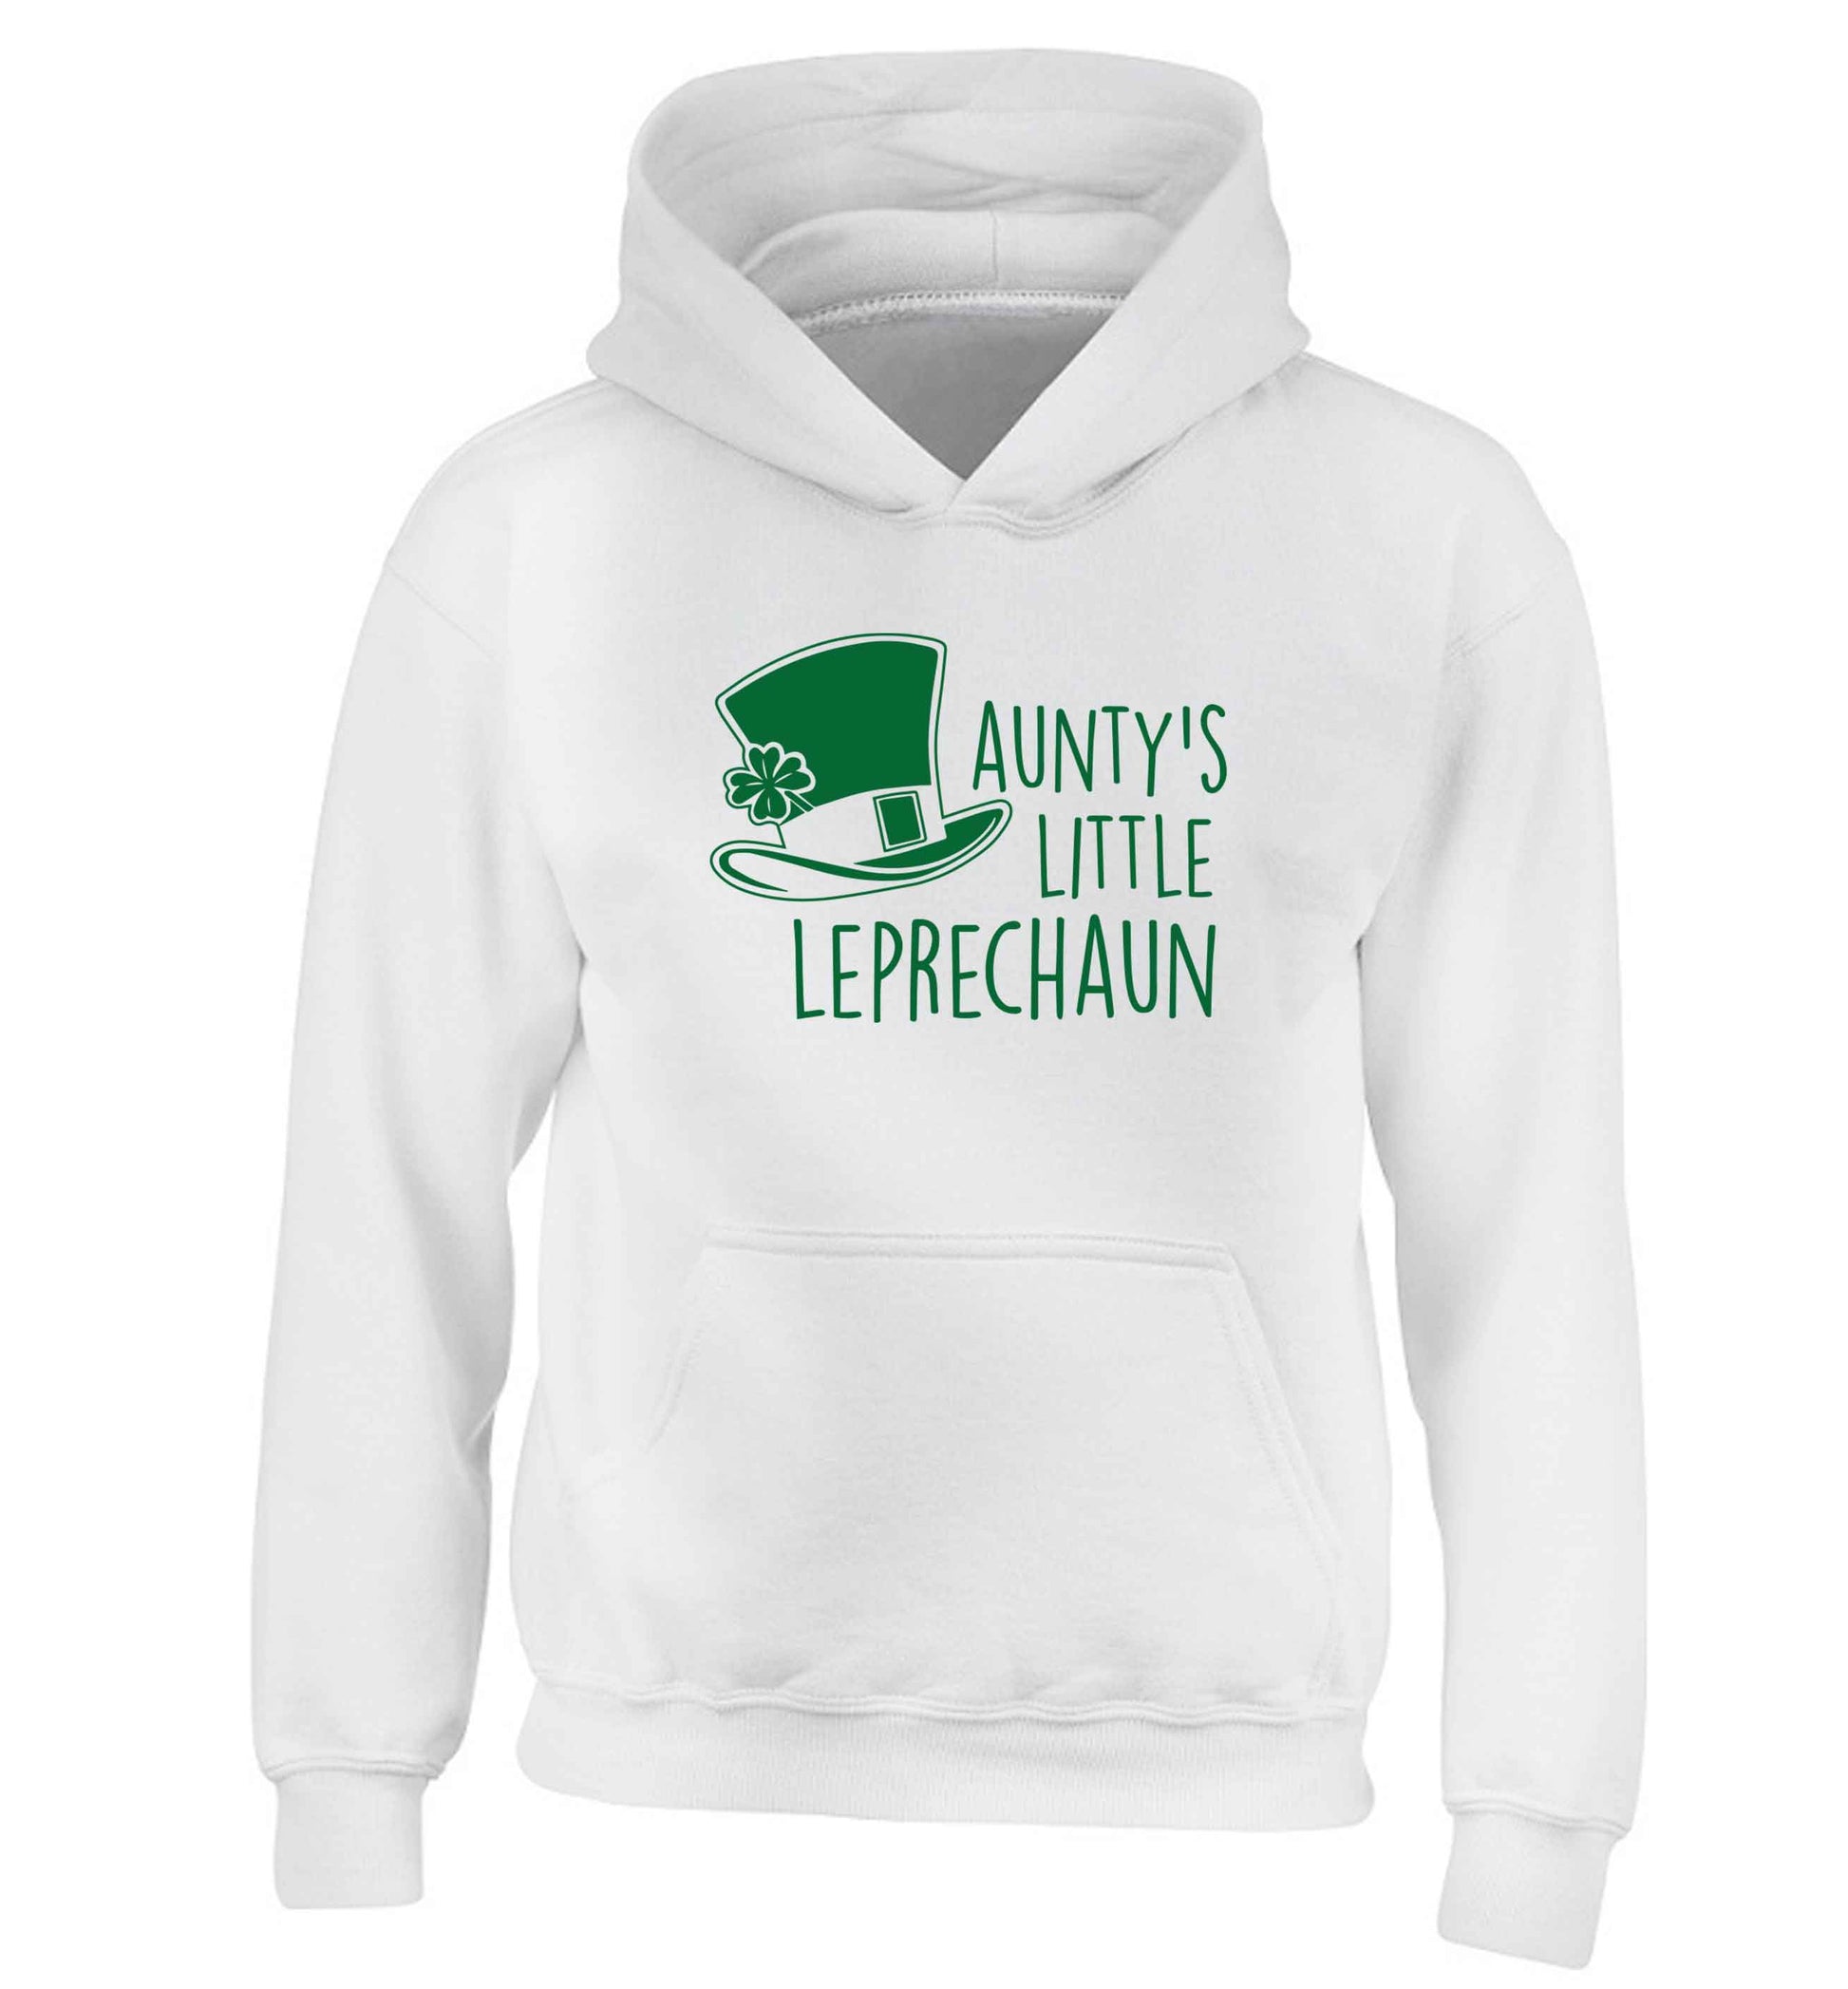 Aunty's little leprechaun children's white hoodie 12-13 Years